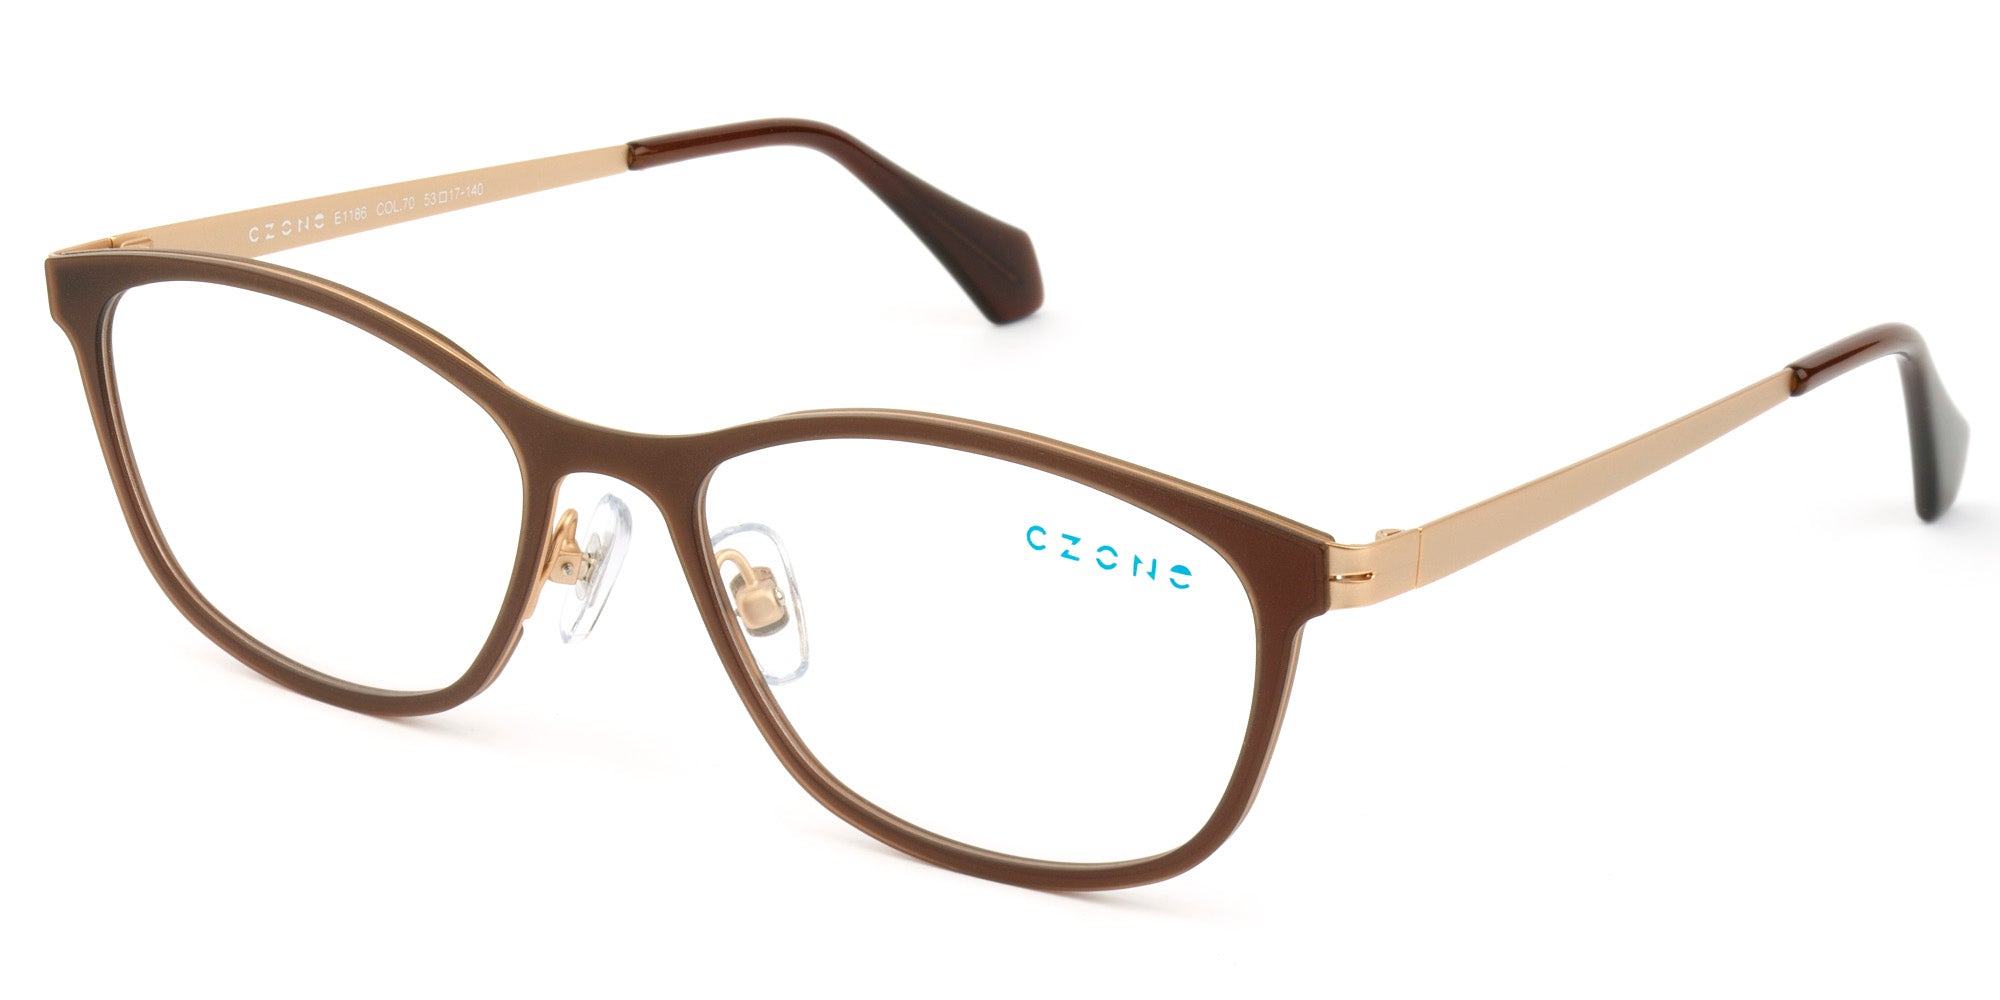 C-Zone White Full Rim Eyeglasses E1186